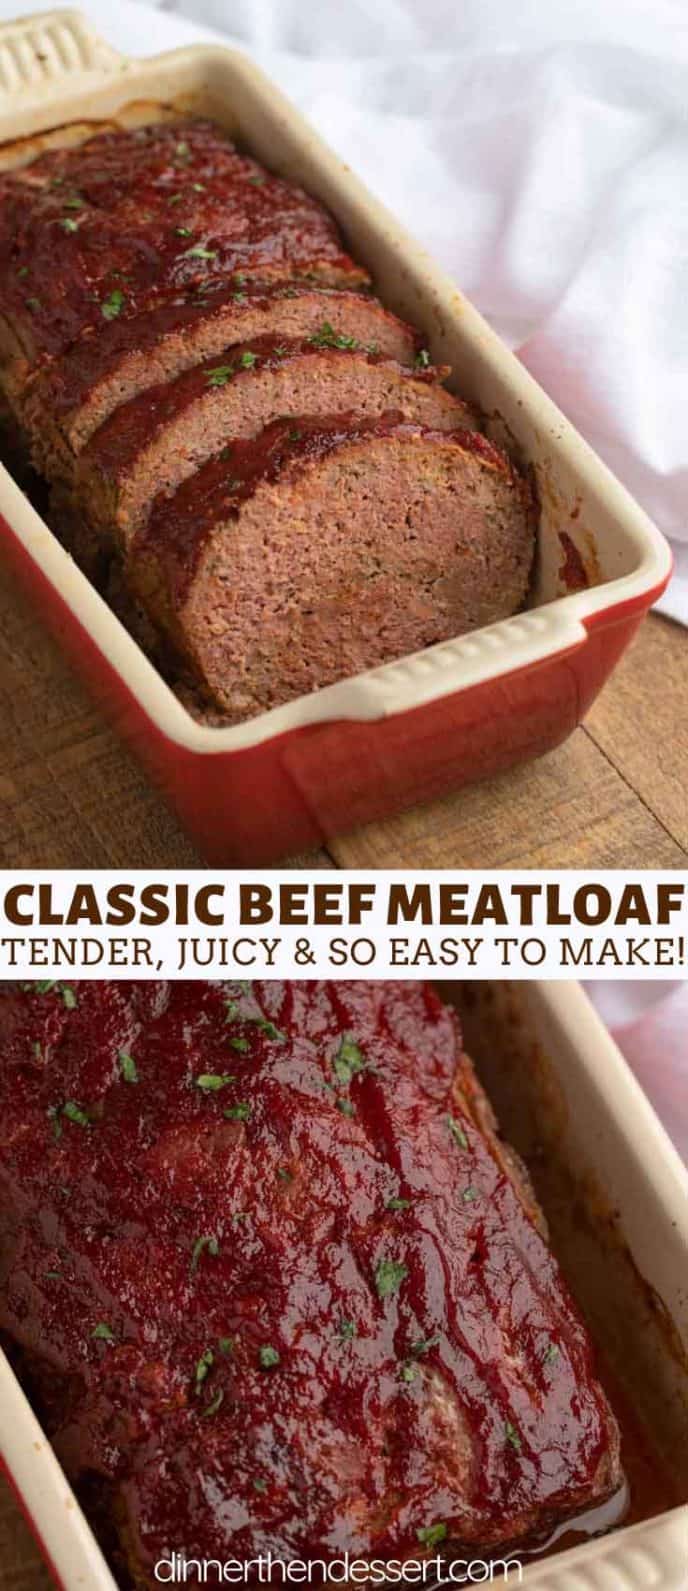 American Beef Meatloaf, Sliced